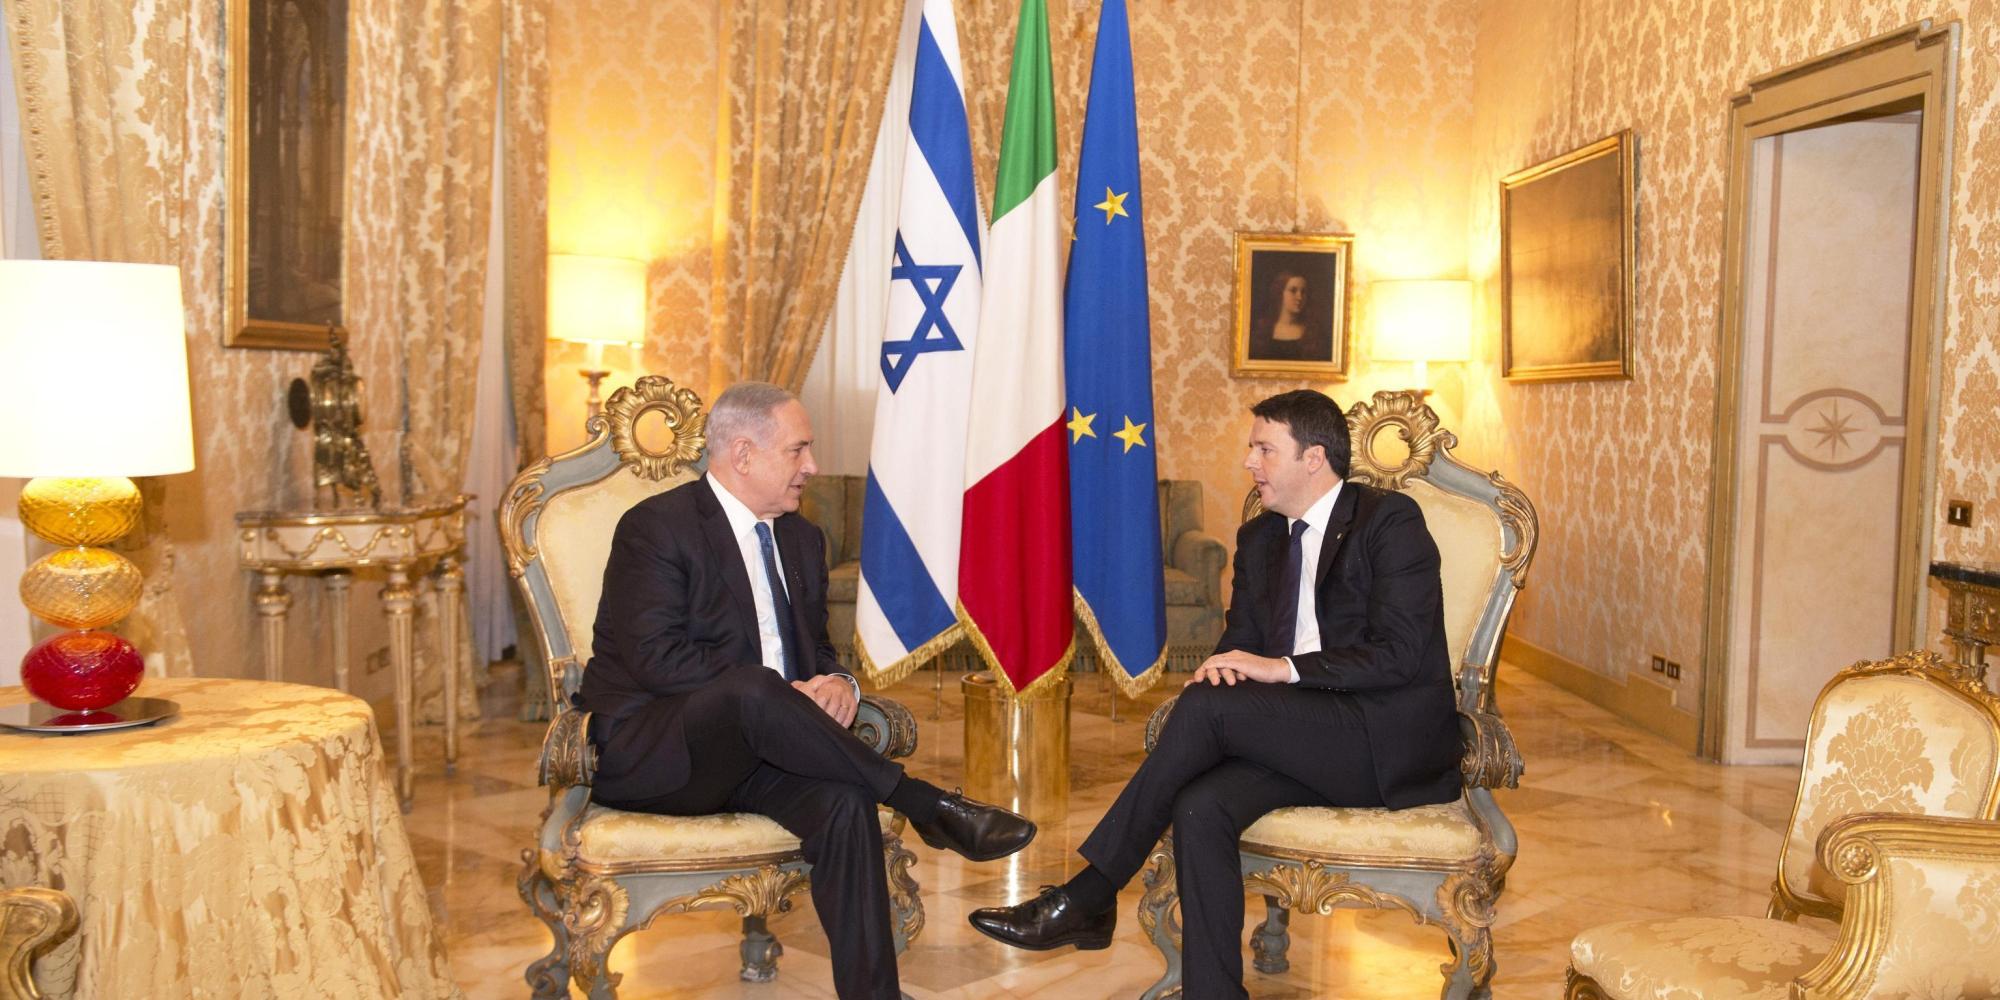 Bibi in arrivo. Firenze blindata accoglie Netanyahu, sabato l’incontro con Renzi